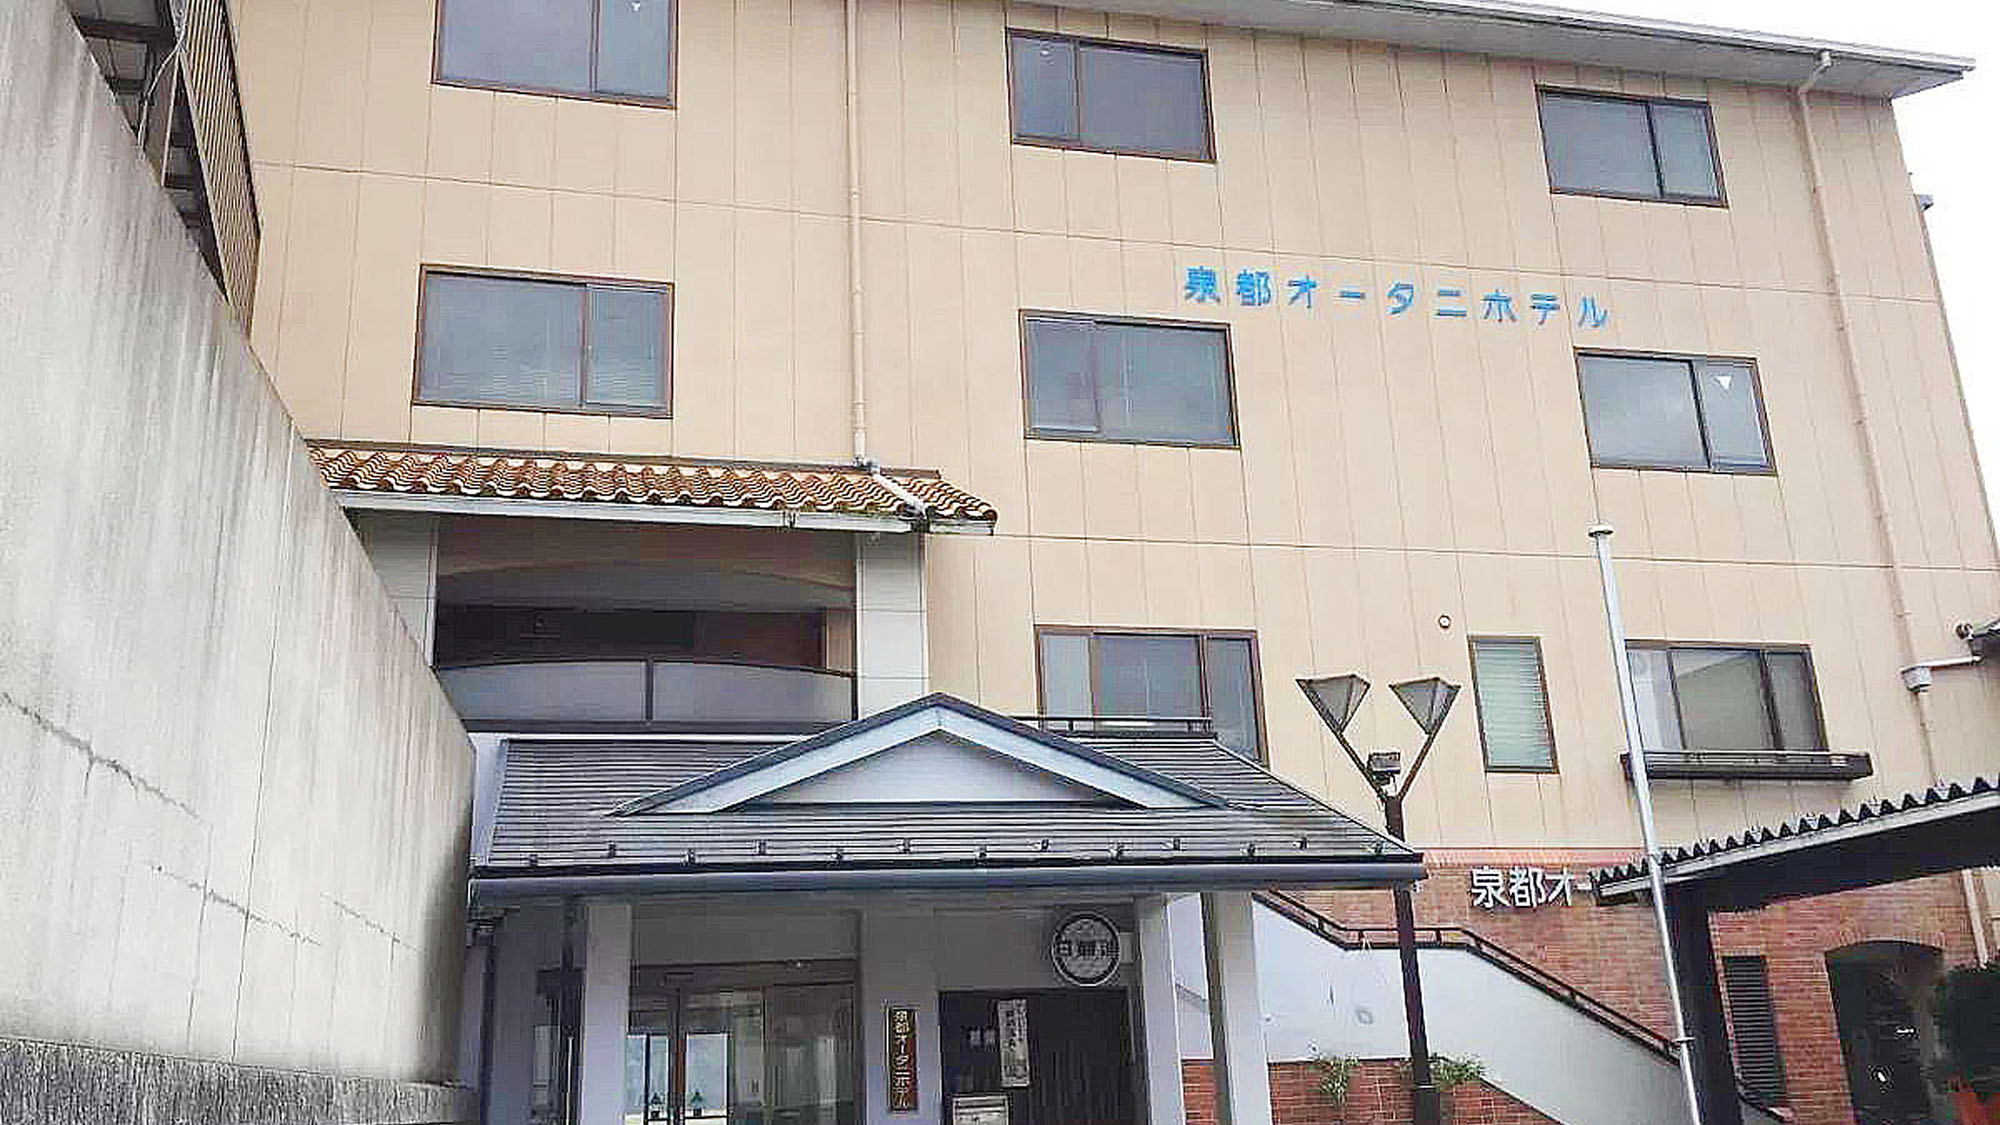 兵庫県へ城崎温泉夢花火が楽しめる便利な旅館